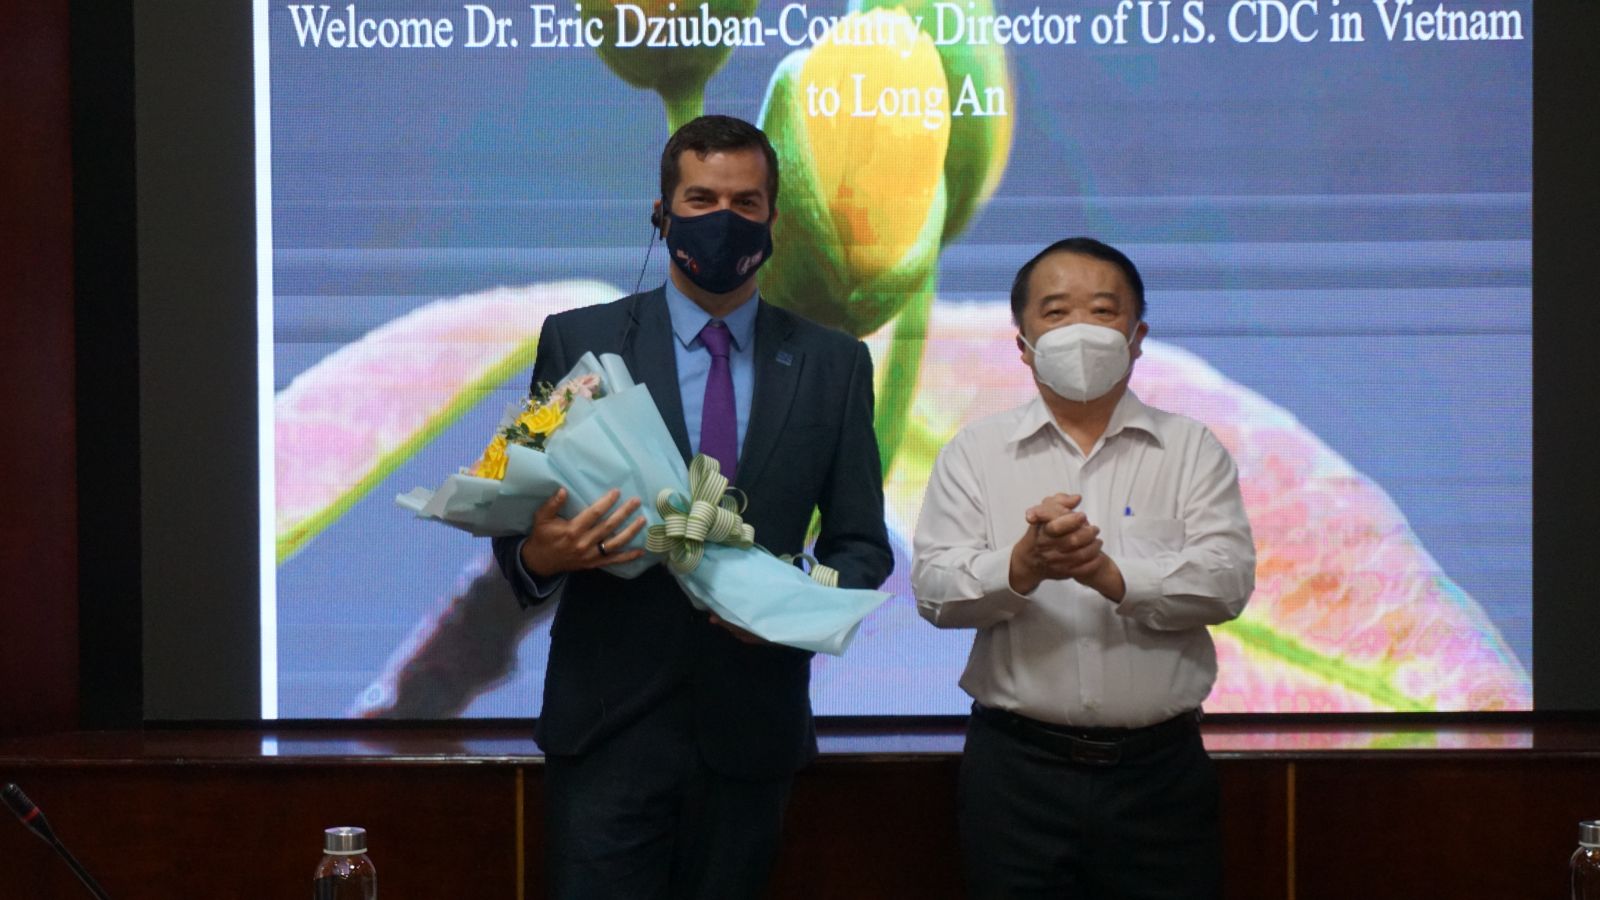 Giám đốc Sở Y tế Long An - BS CKII Huỳnh Minh Phúc (bên phải) tặng hoa, chào mừng Giám đốc CDC Hoa Kỳ tại Việt Nam - Tiến sĩ Eric Dziuban tham dự Lễ khởi động sự kiện “Điều trị ARV là dự phòng” tại Long An